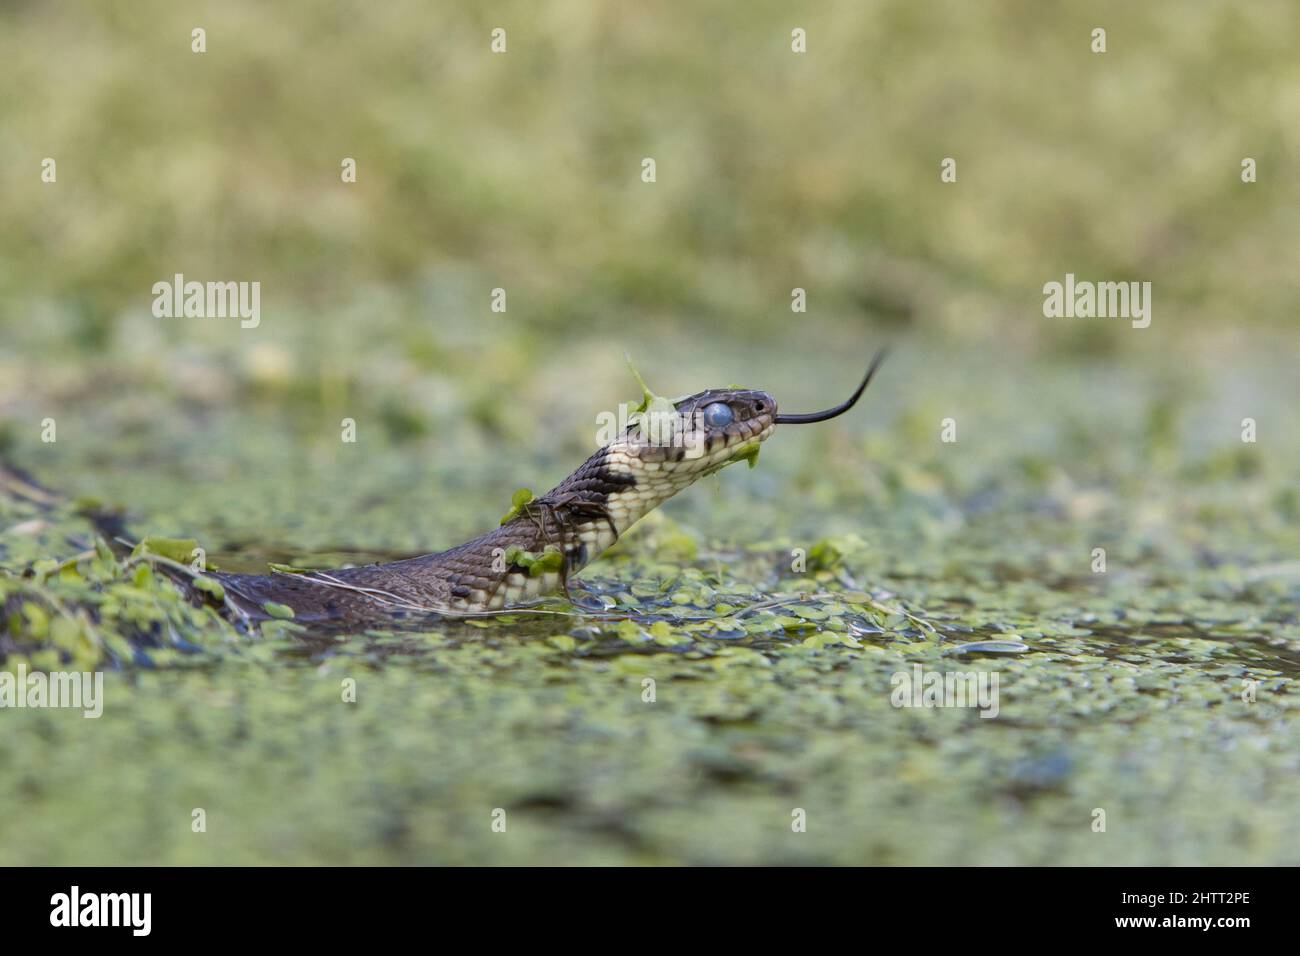 Serpent à herbe (Natrix natrix) adulte avec des yeux nuageux avant de se débarrasser de la peau, tourbillonnant parmi les duckweed, flicking langue Banque D'Images